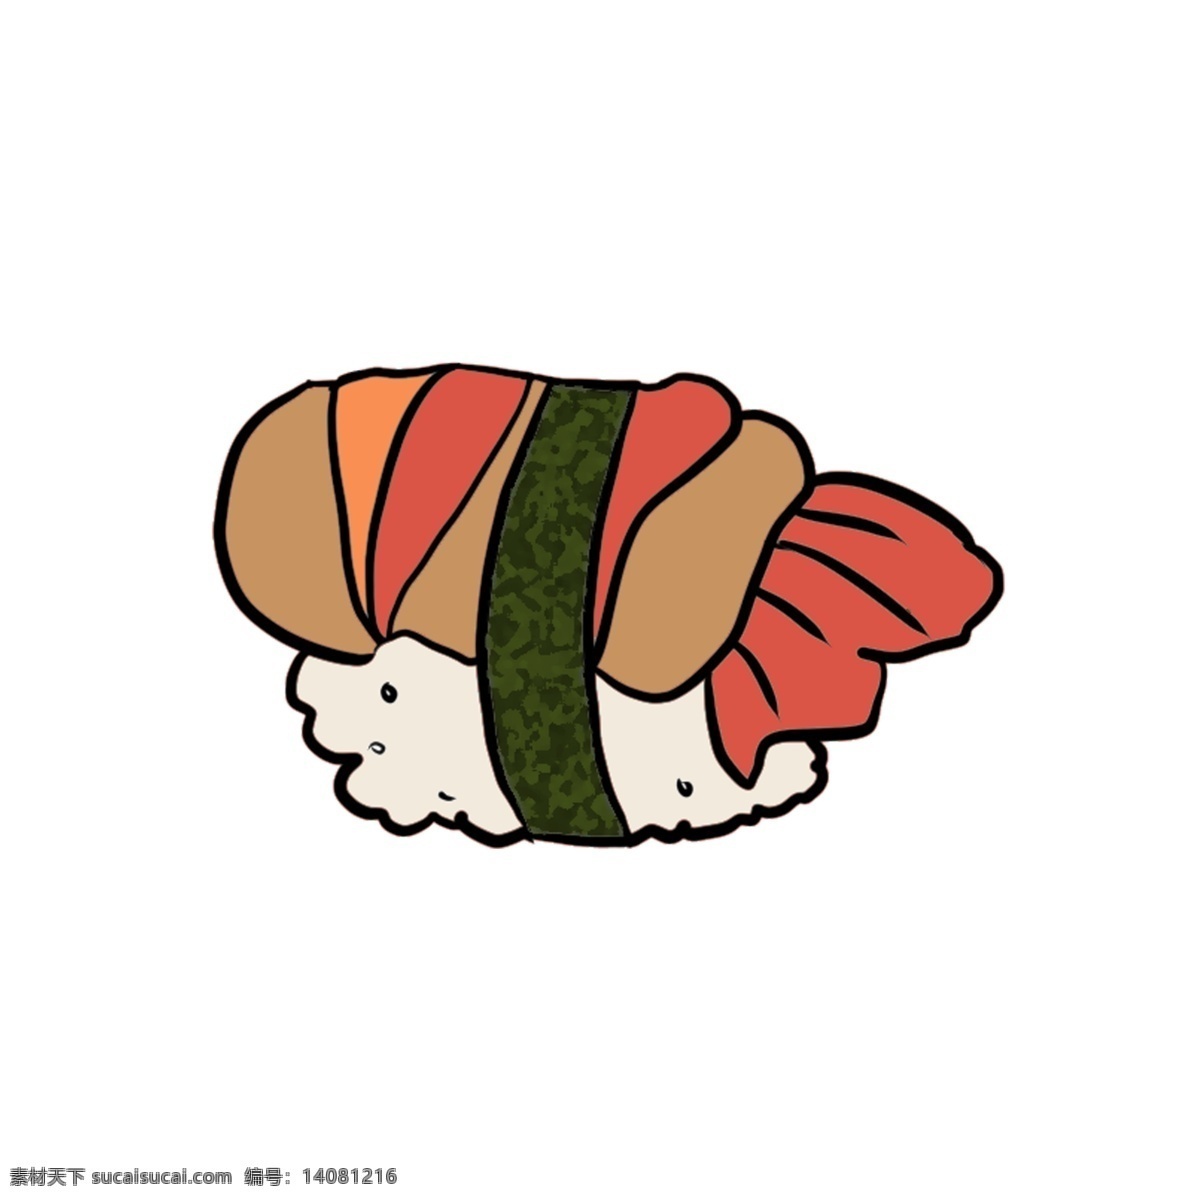 美味 三文鱼 寿司 小吃 寿司插图 美味的寿司 三文鱼寿司 日本美食 寿司插画 特色小吃 食物